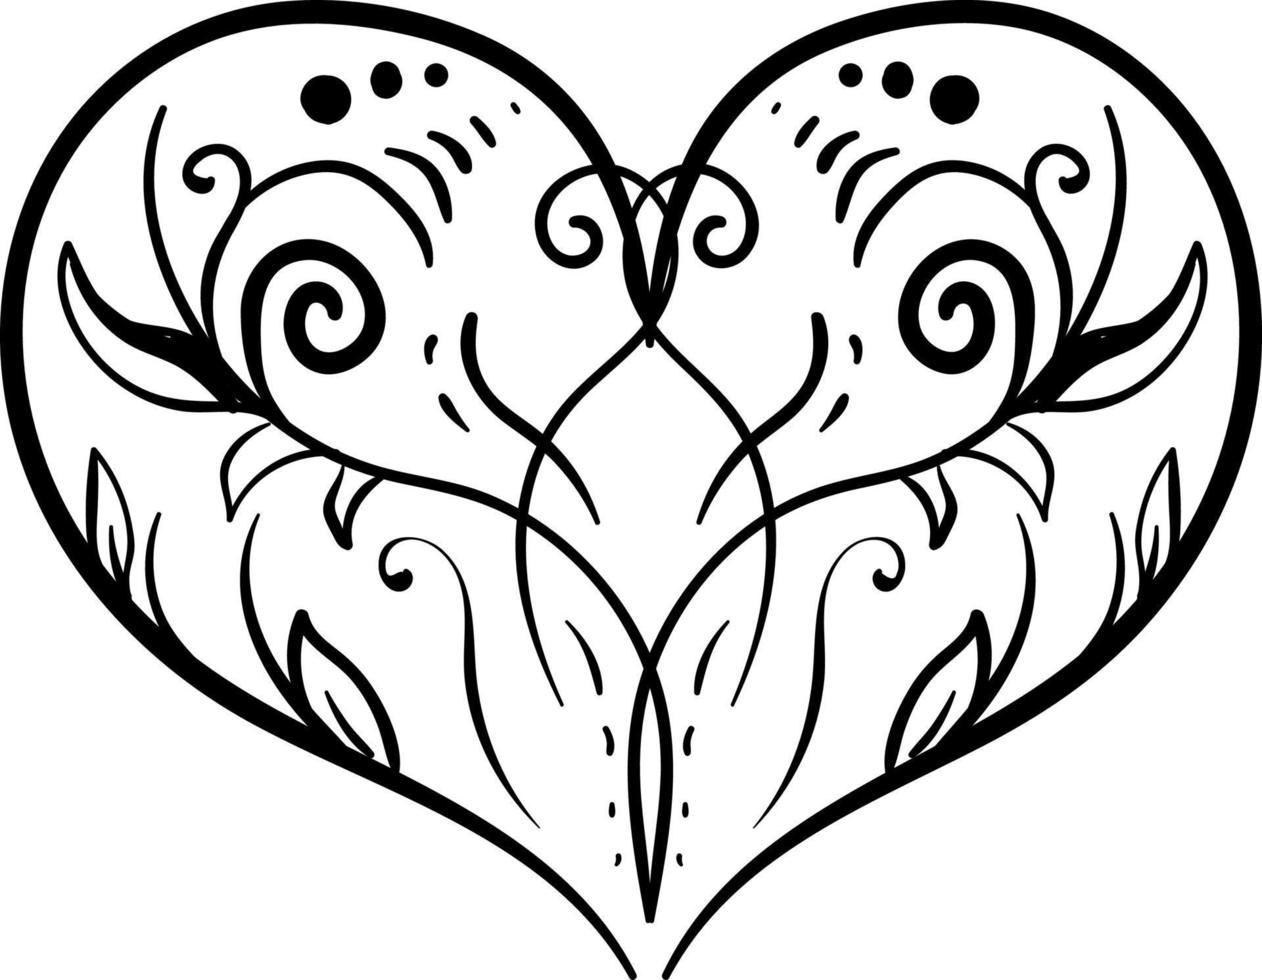 dessin de coeur, illustration, vecteur sur fond blanc.